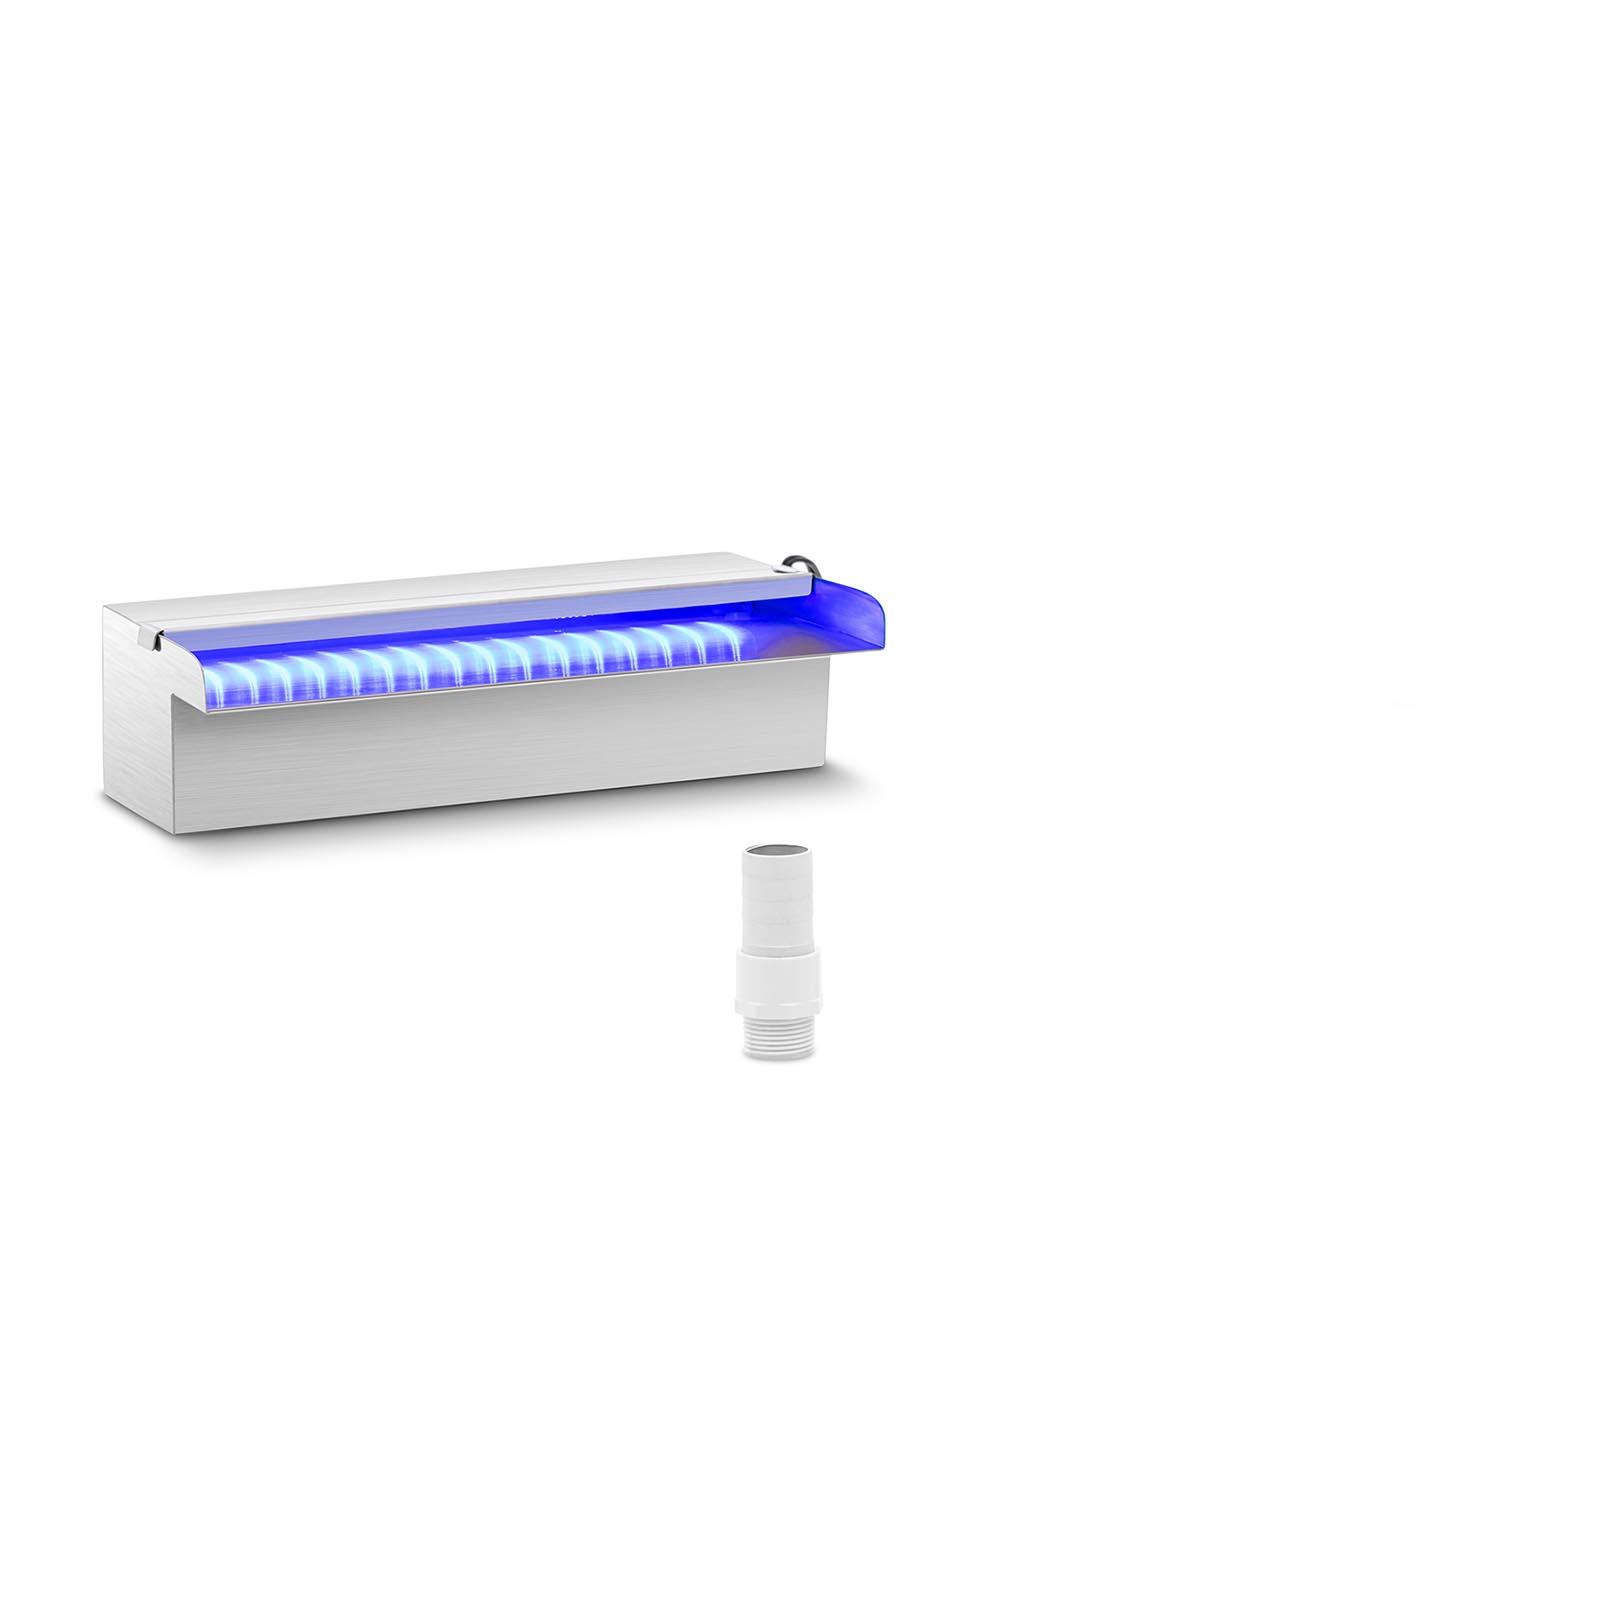 Ντους υπερχείλισης - 30 cm - Φωτισμός LED - Μπλε / Λευκό